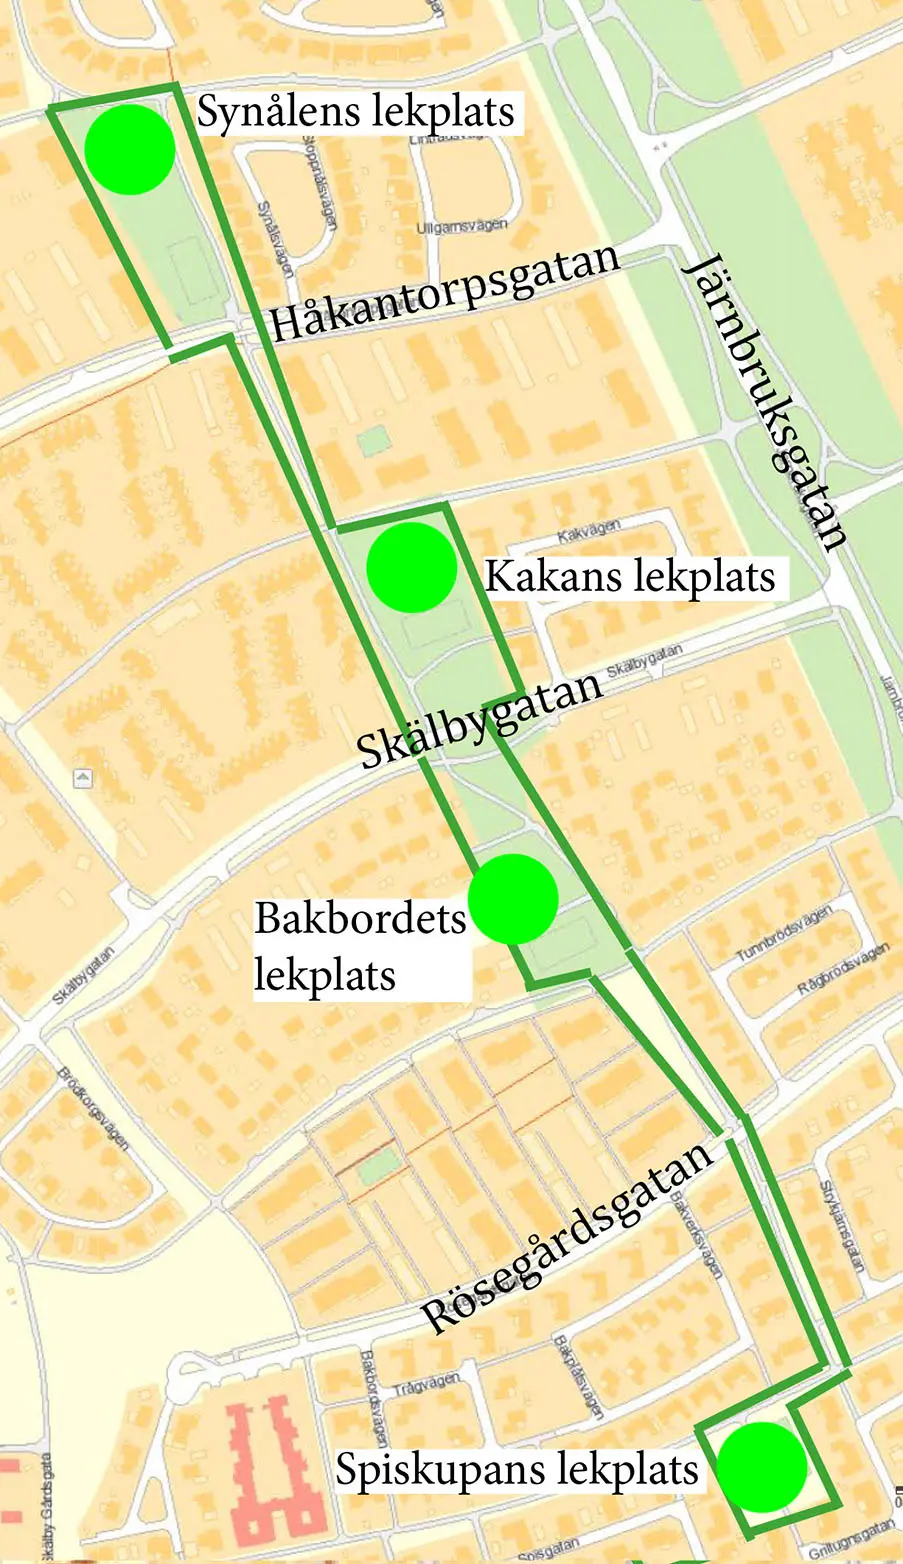 Karta över östra Skälby. På kartan finns en sammanhängande markering som omfattar Spiskupans, Bakbordets, Kakans och Synålens lekplats.